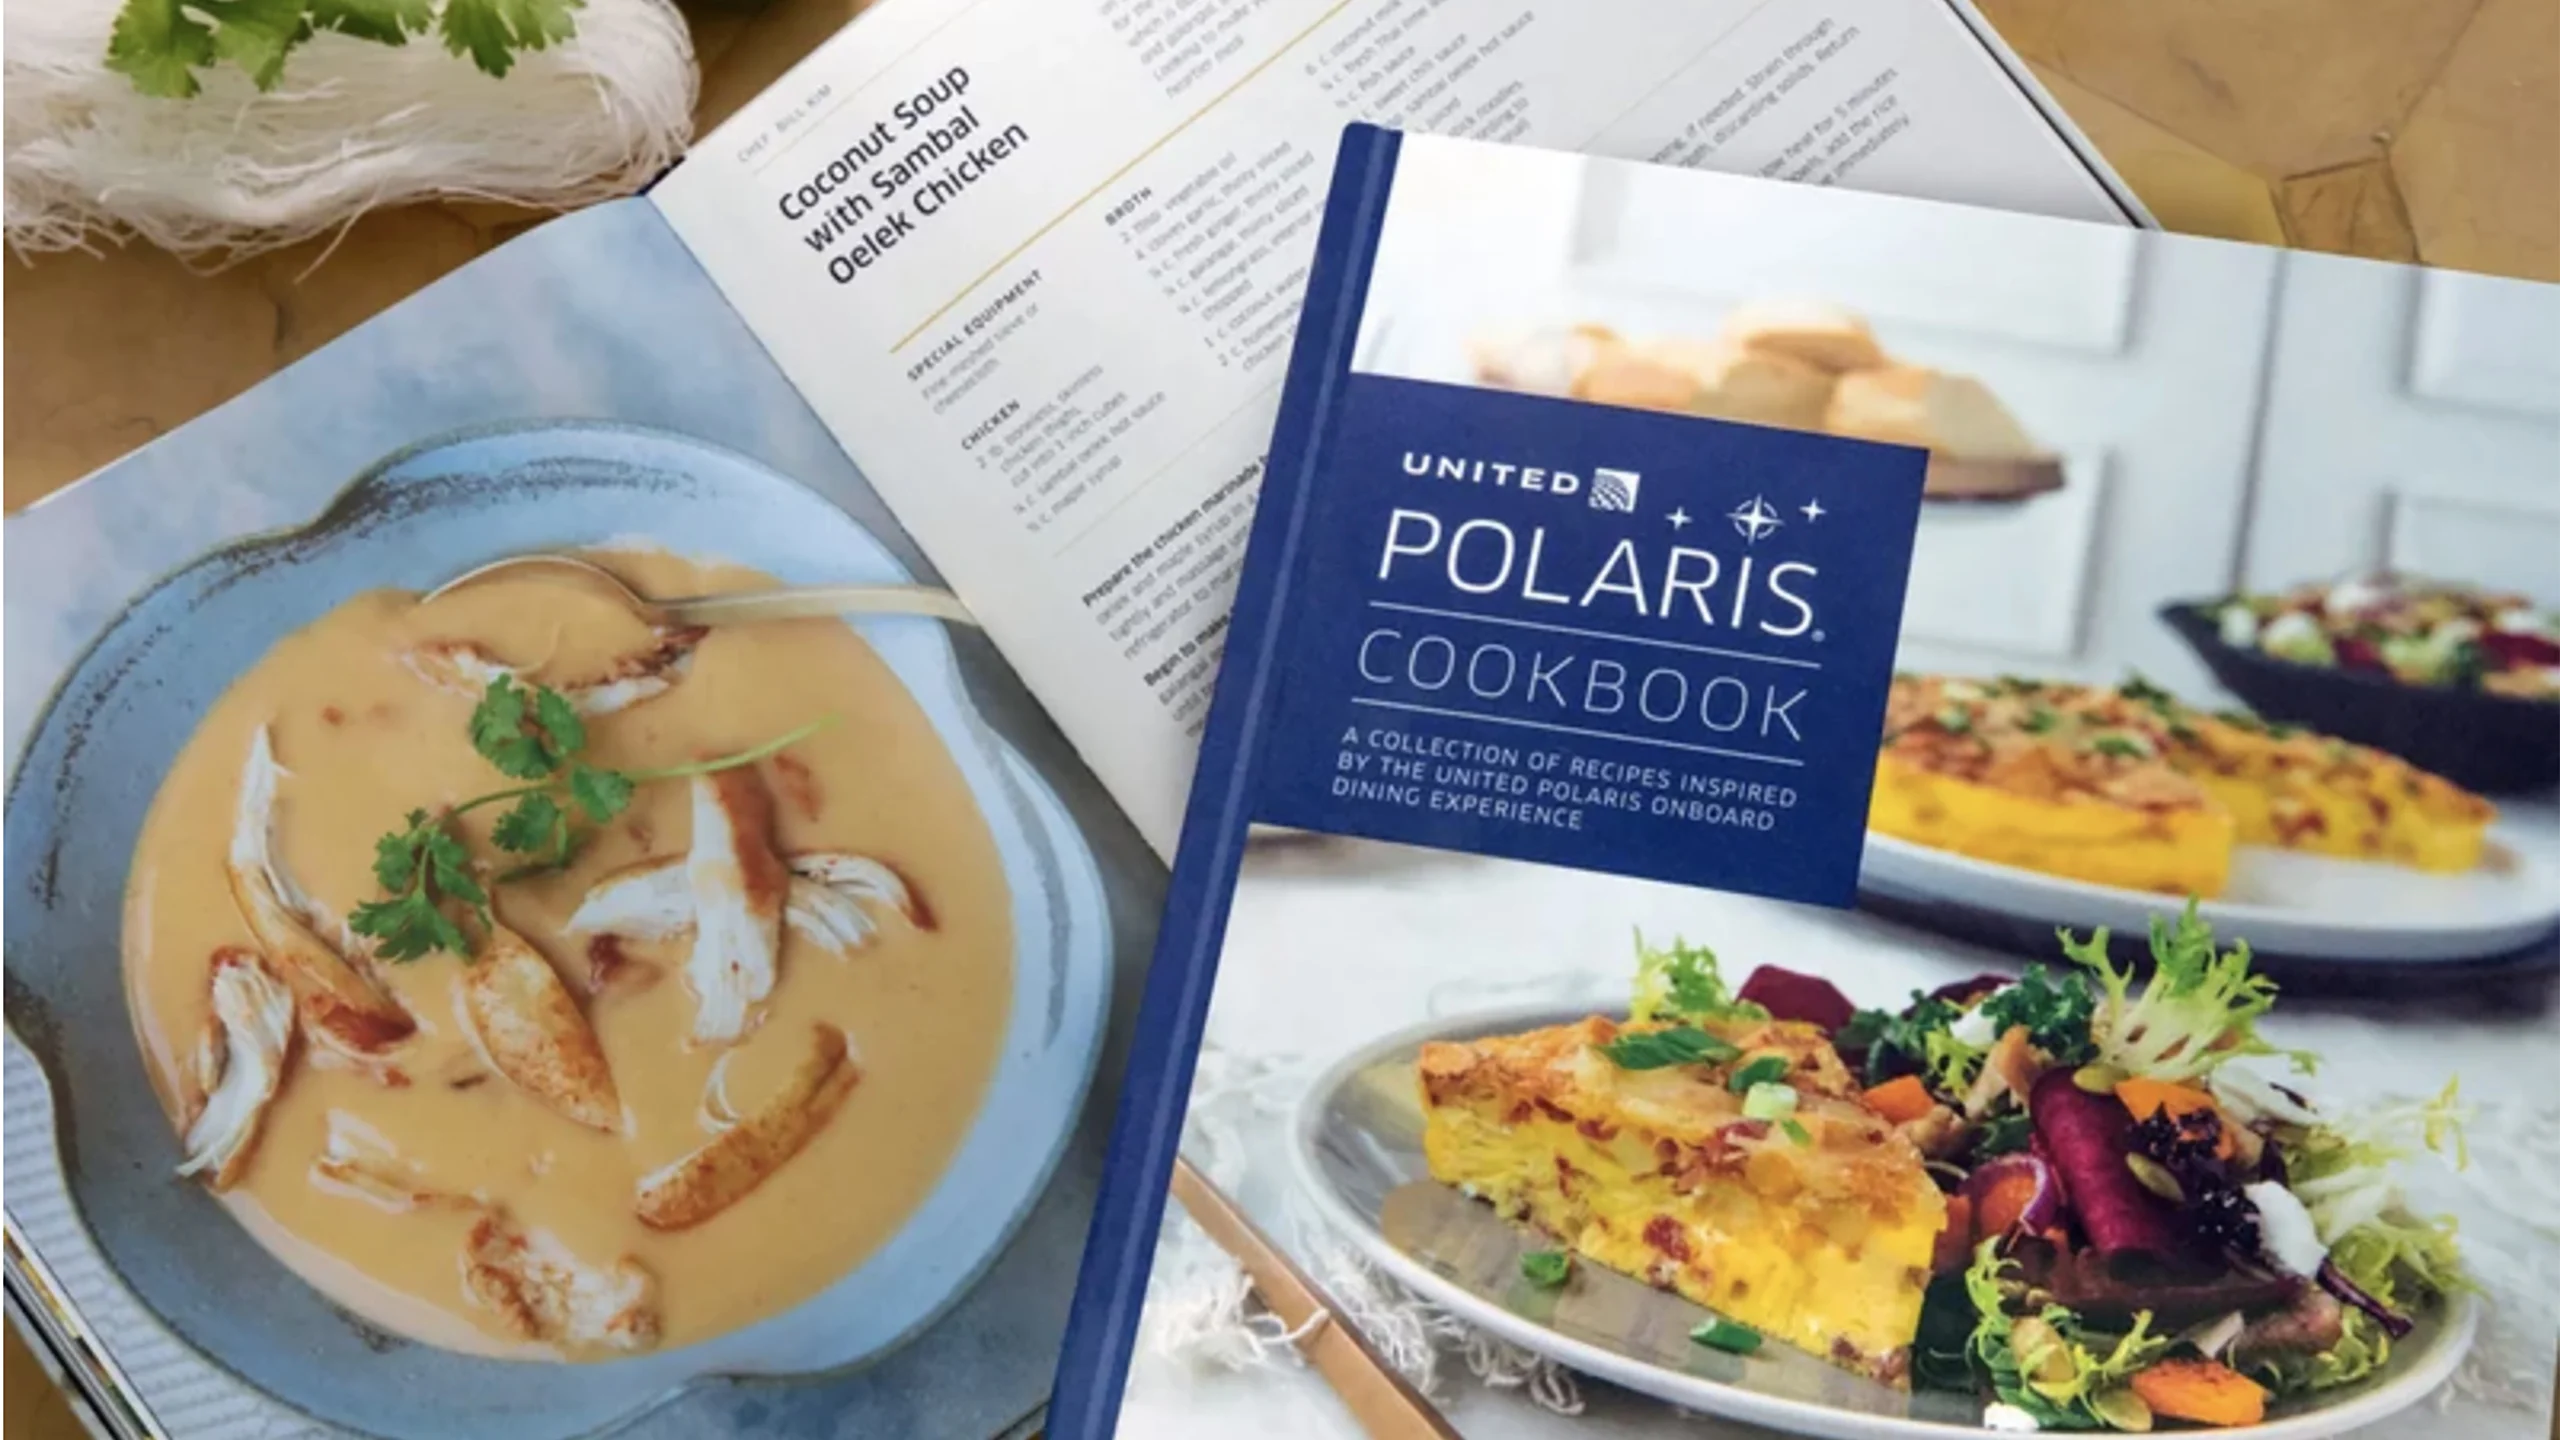 United Airlines lanzó un libro de cocina de comidas a bordo